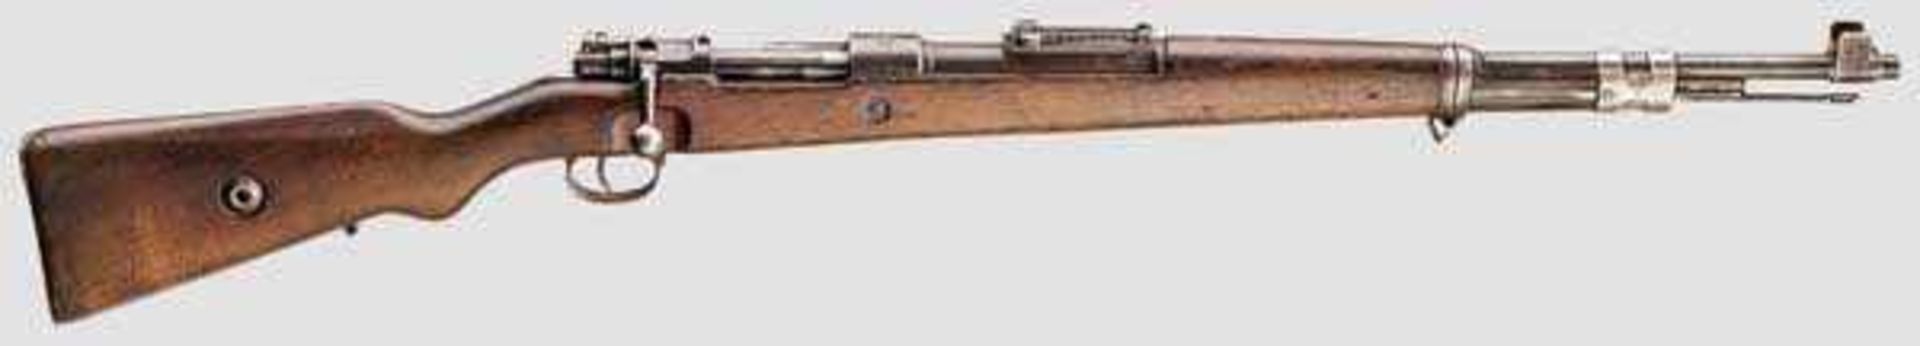 Karabiner 98 k Mod. 1937, Mauser Kal. 8 x 57, Nr. D12746. Nummerngleich. Lauf reinigungsbedürftig,